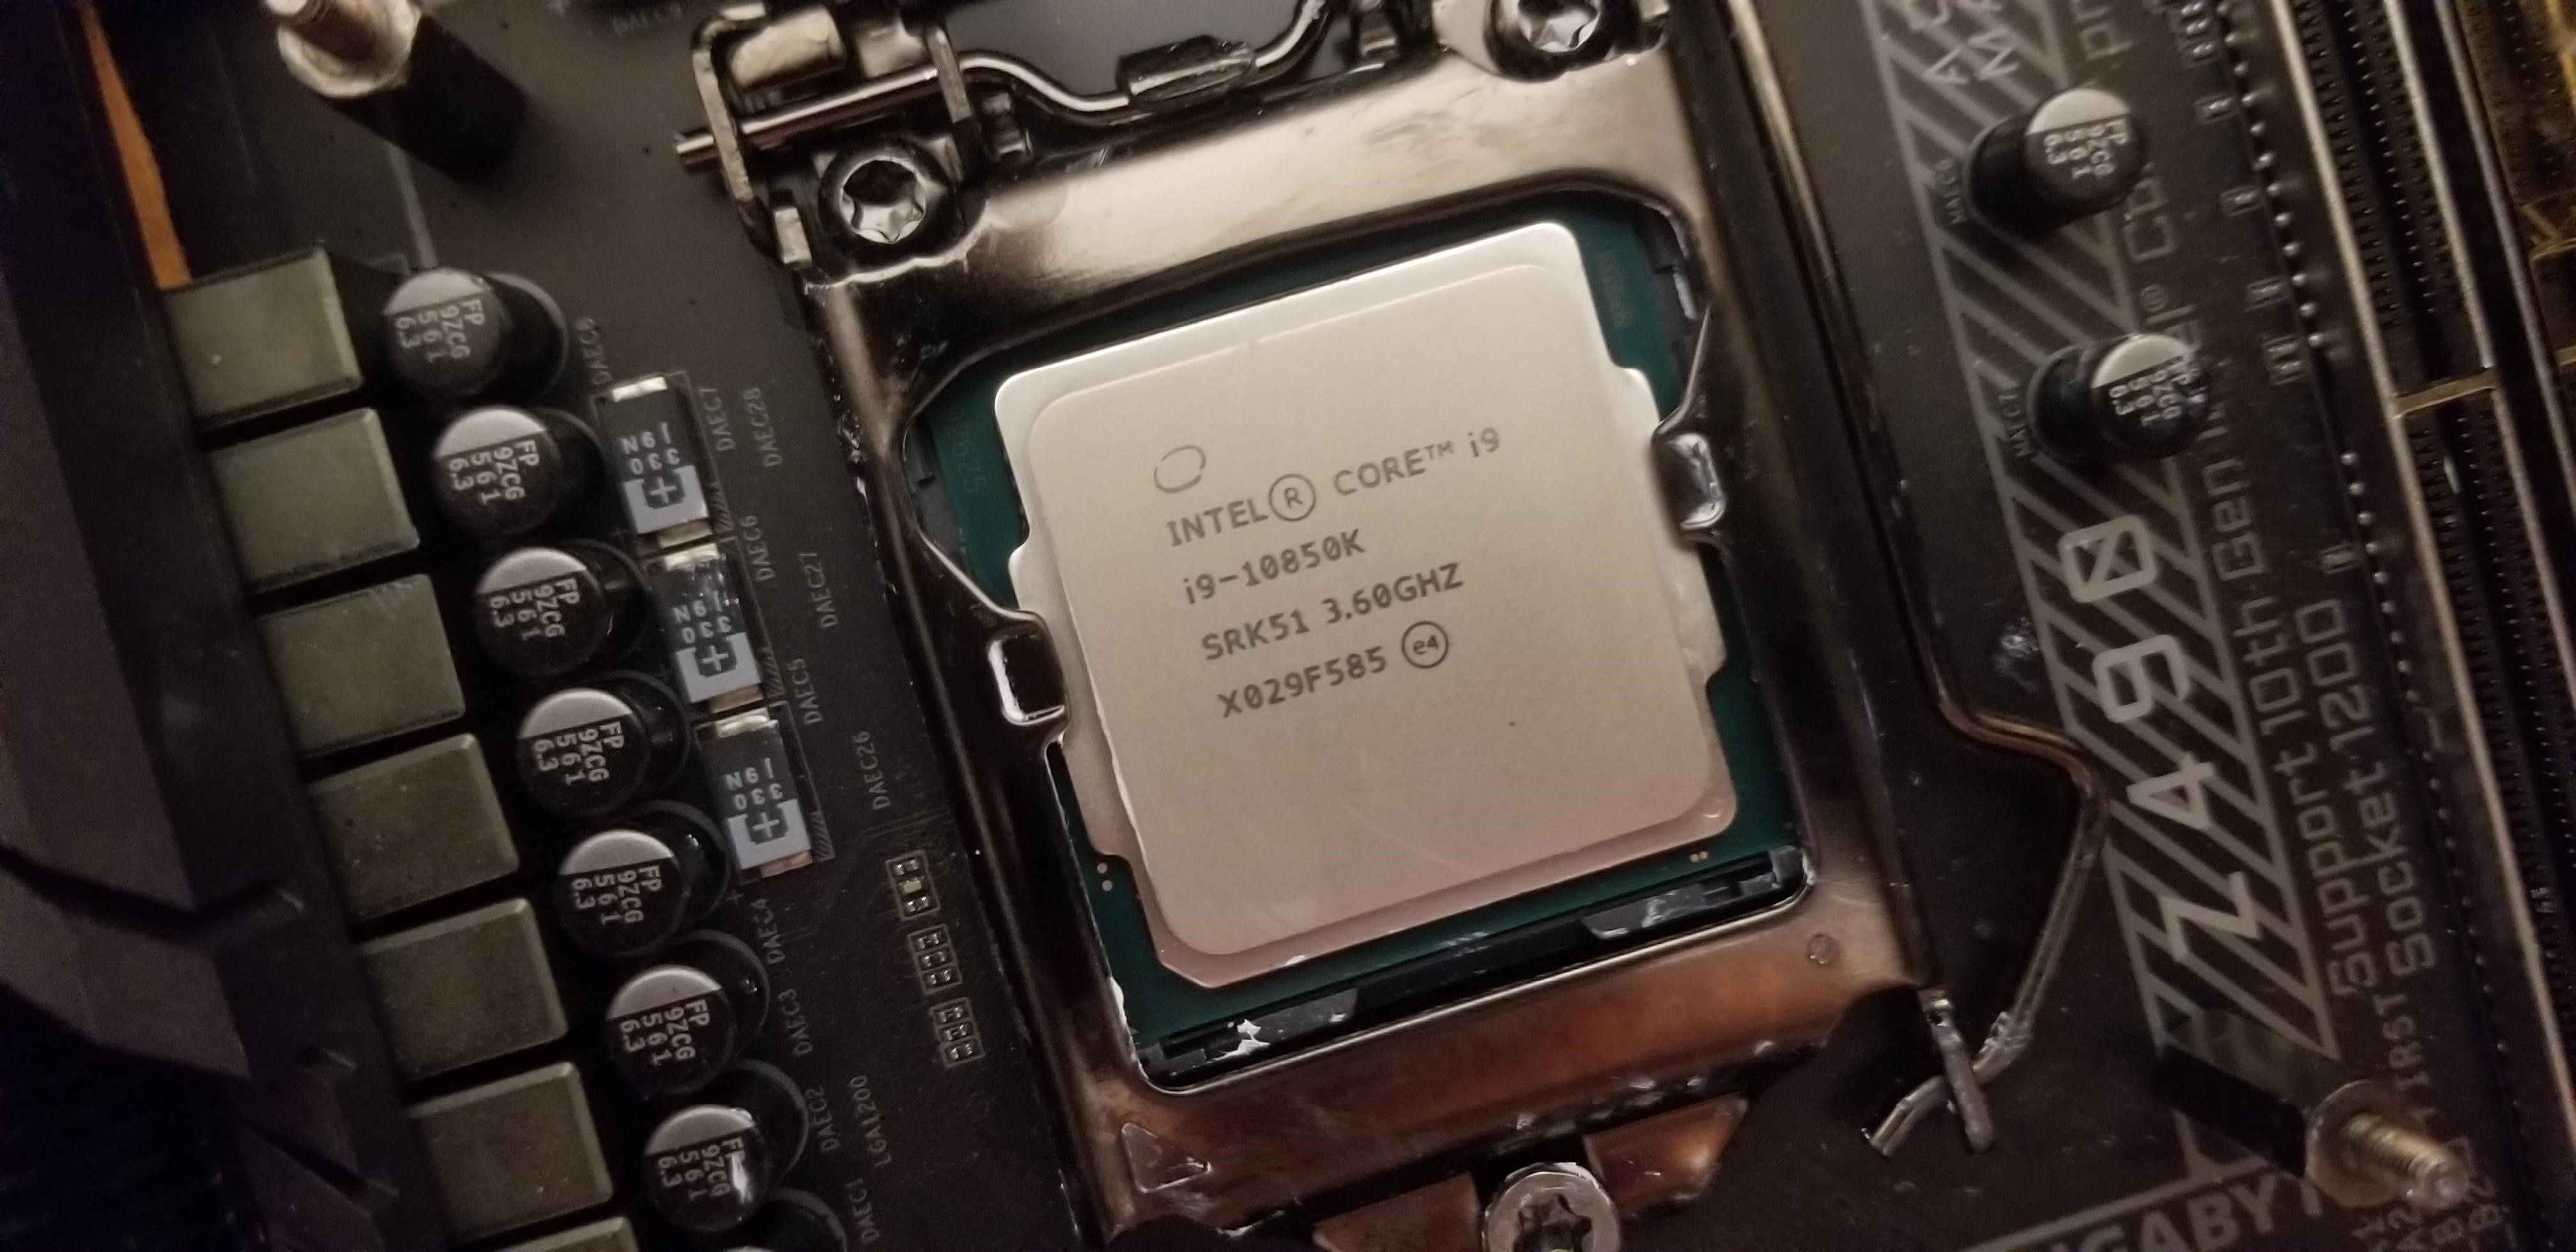 Intel Core i9 10850K CPU